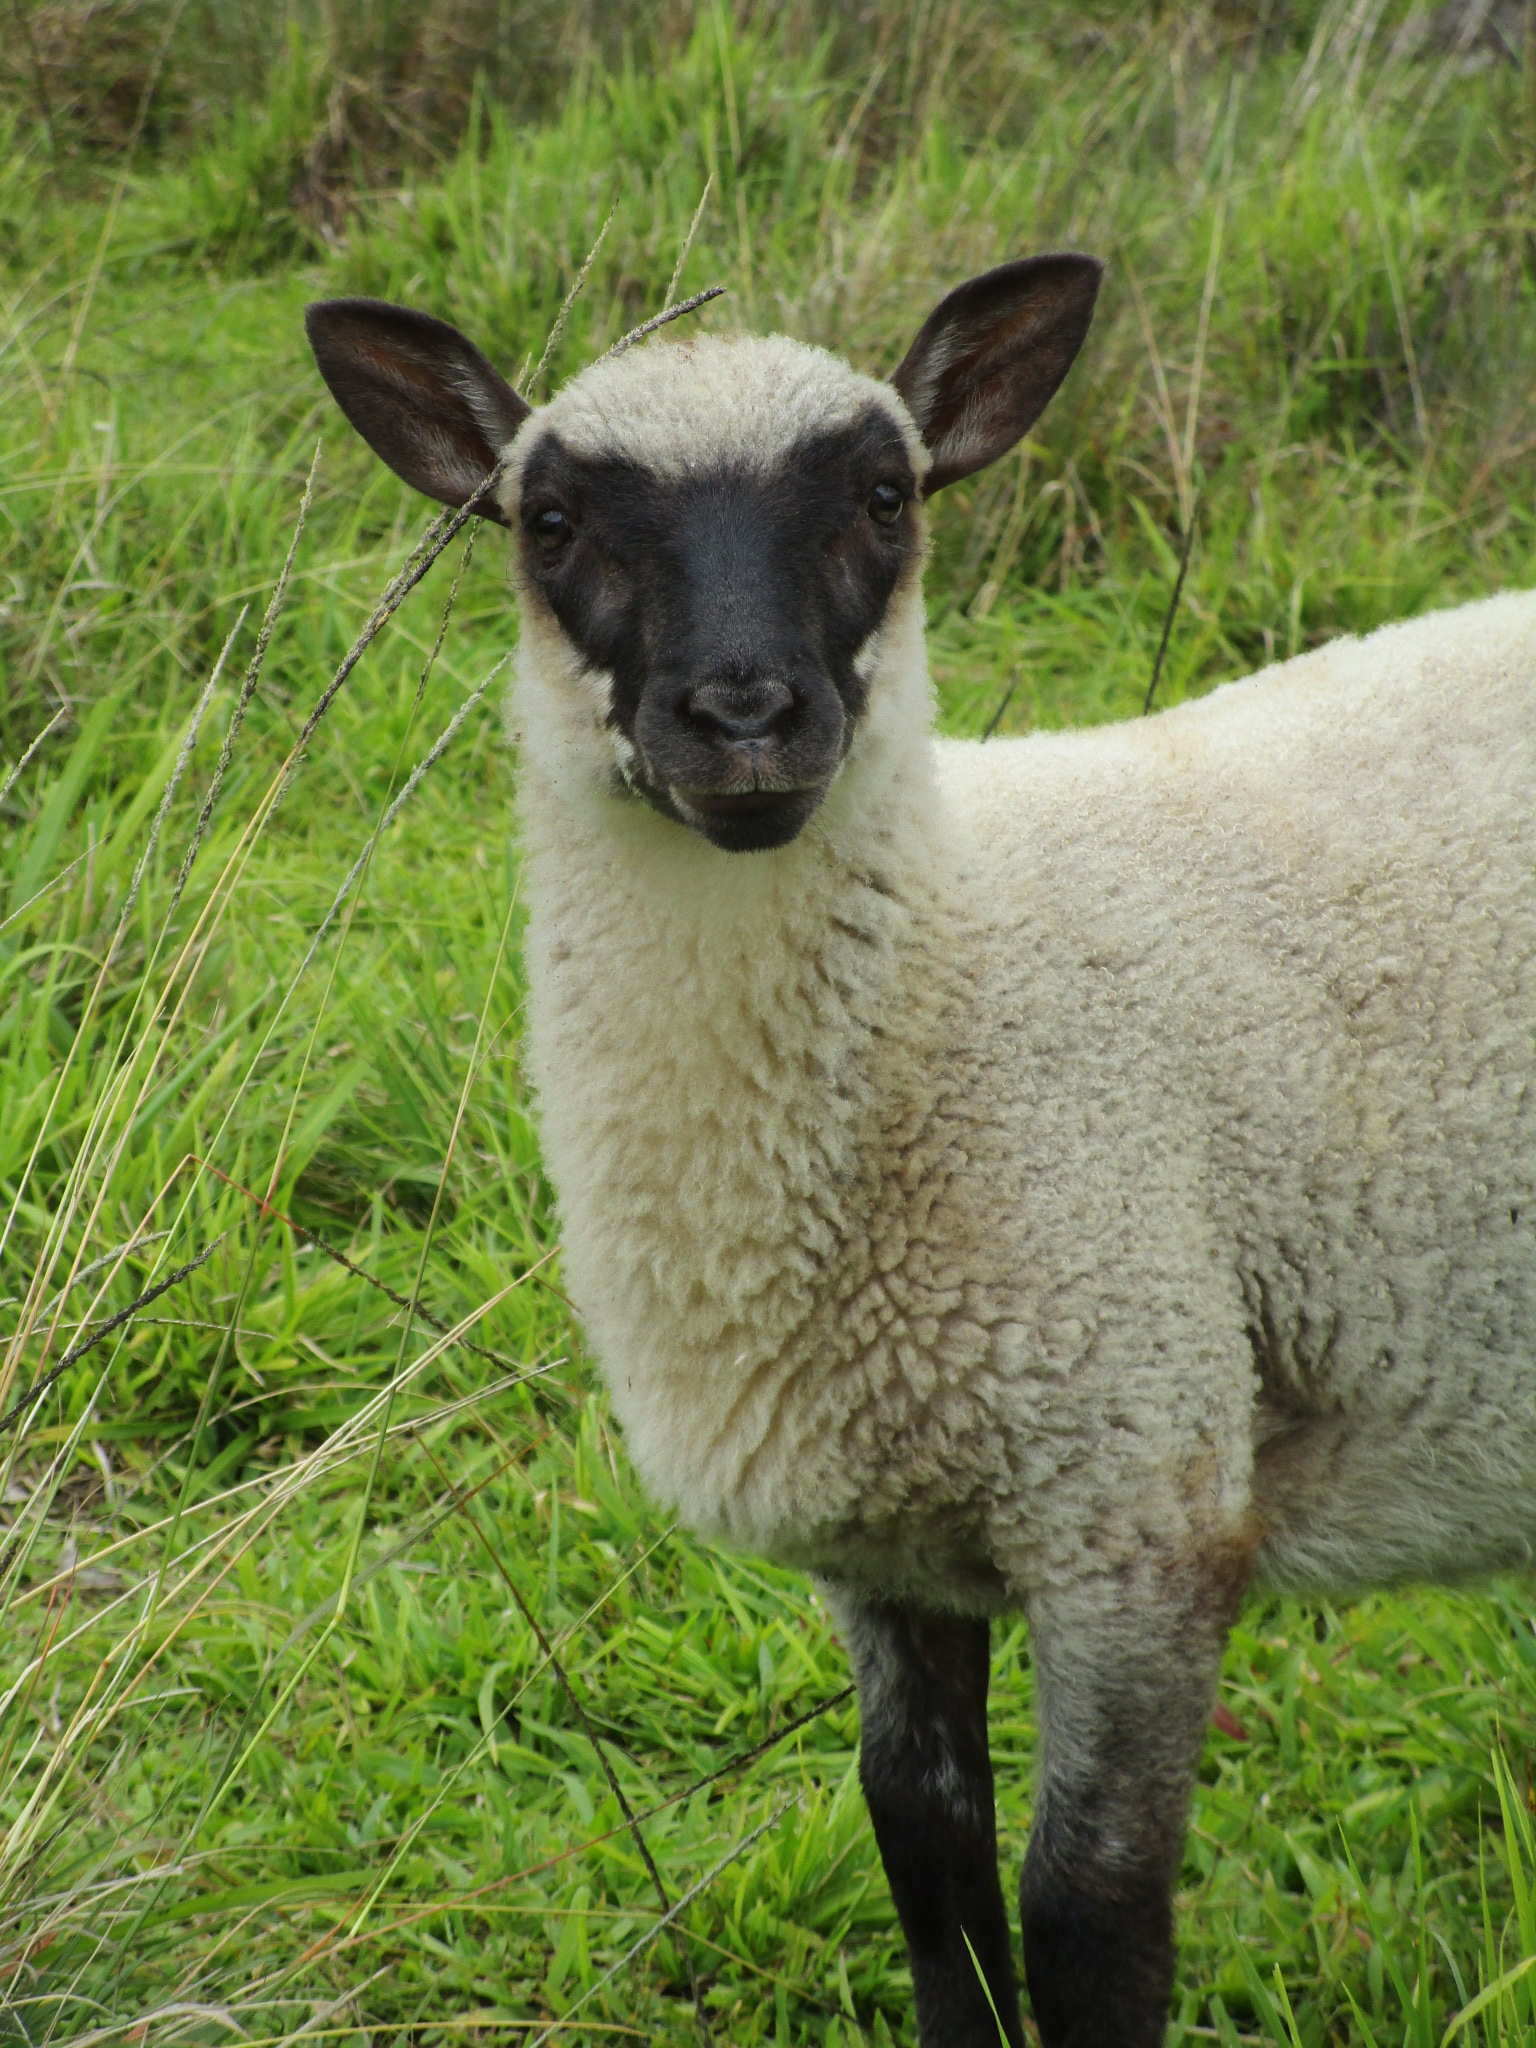 Ram lamb